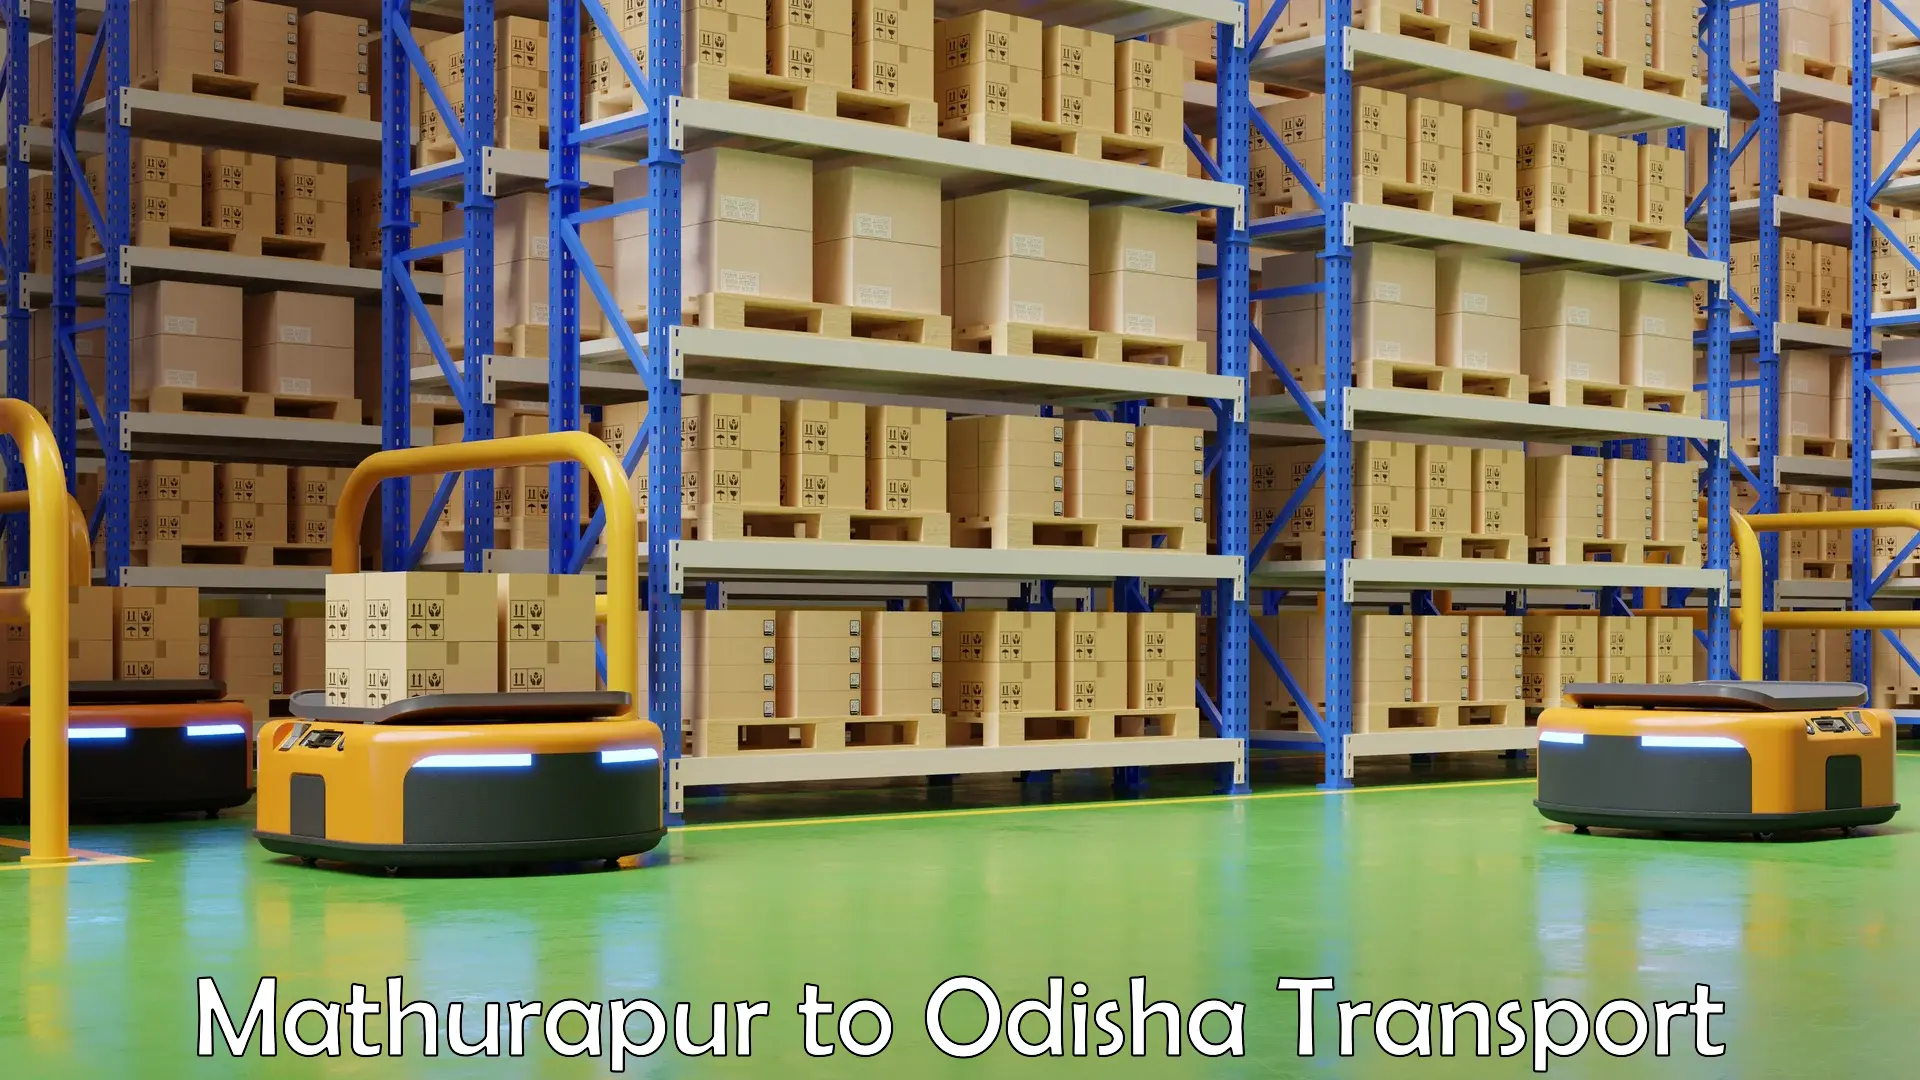 Container transport service Mathurapur to Astaranga